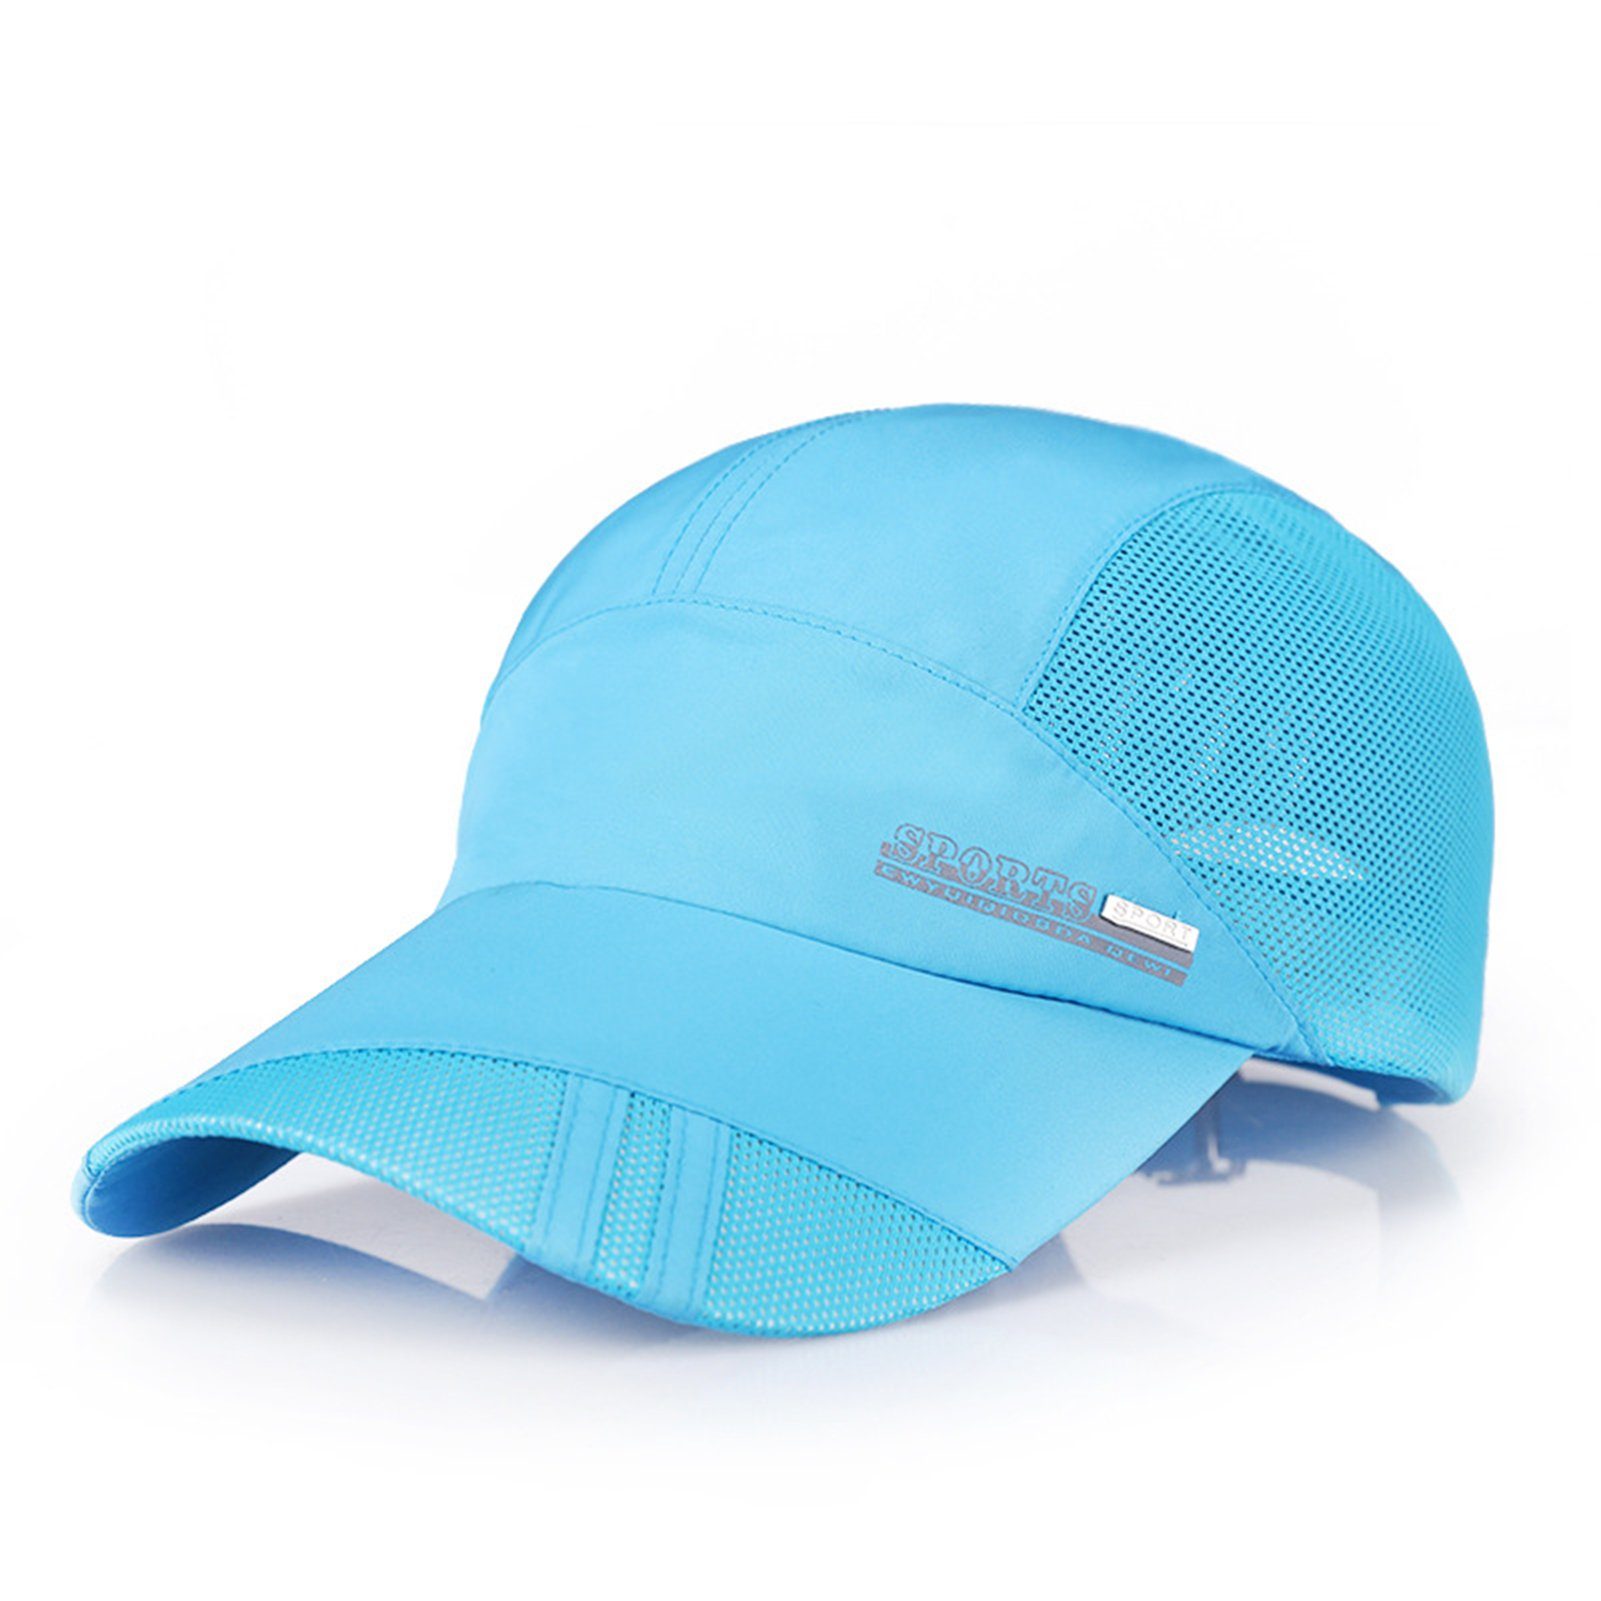 Blusmart Baseball Cap Kappe Kappe Design Mesh Sonnenschutz Baseball Lässig See blauer Sonnenhut